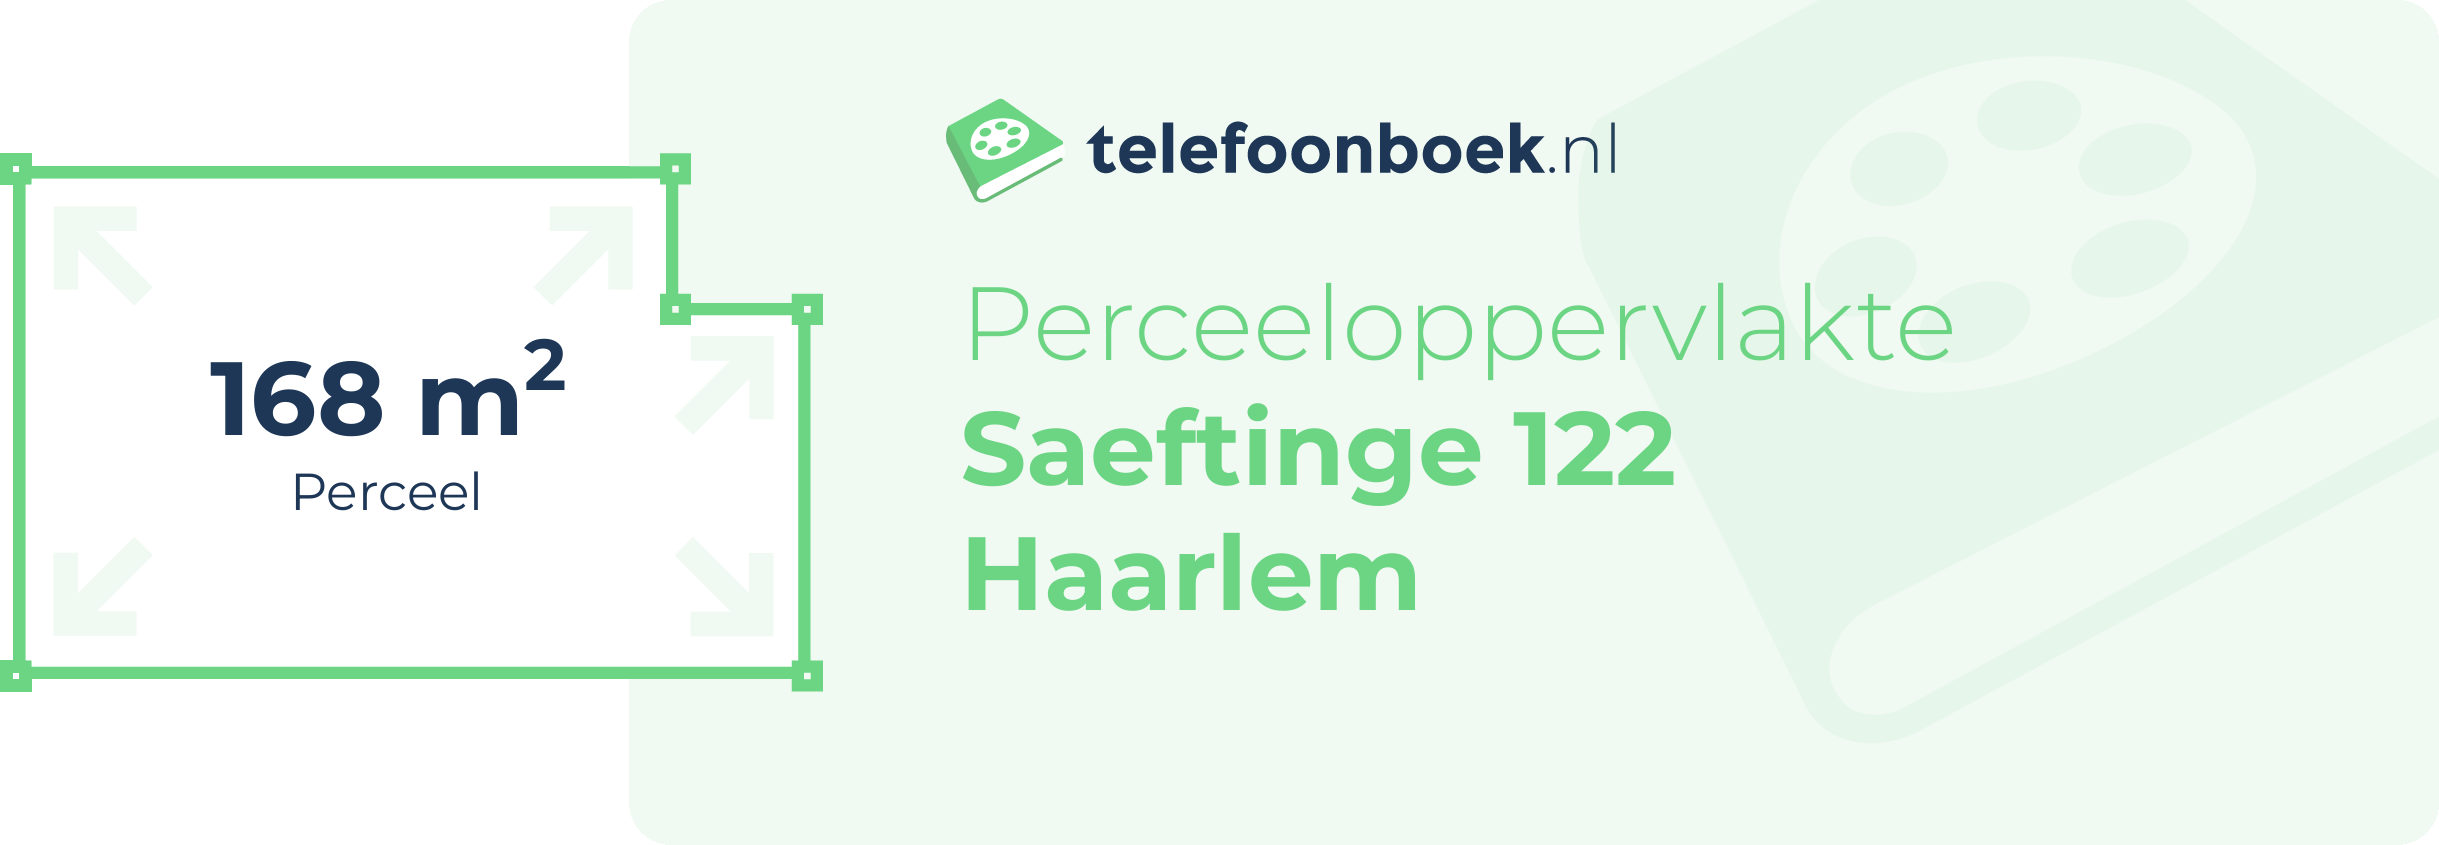 Perceeloppervlakte Saeftinge 122 Haarlem